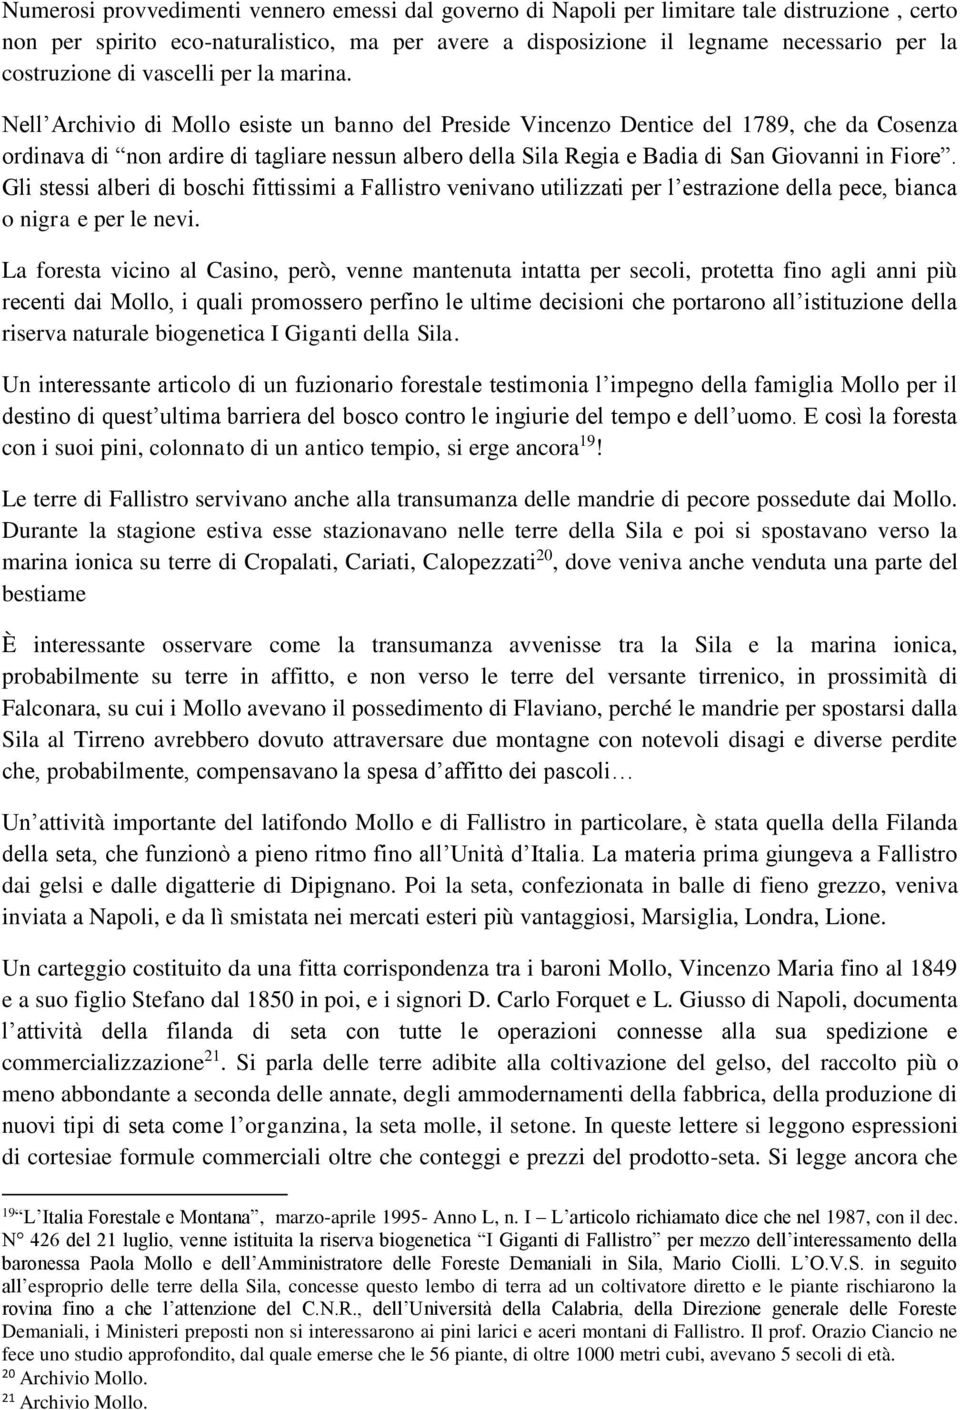 Nell Archivio di Mollo esiste un banno del Preside Vincenzo Dentice del 1789, che da Cosenza ordinava di non ardire di tagliare nessun albero della Sila Regia e Badia di San Giovanni in Fiore.